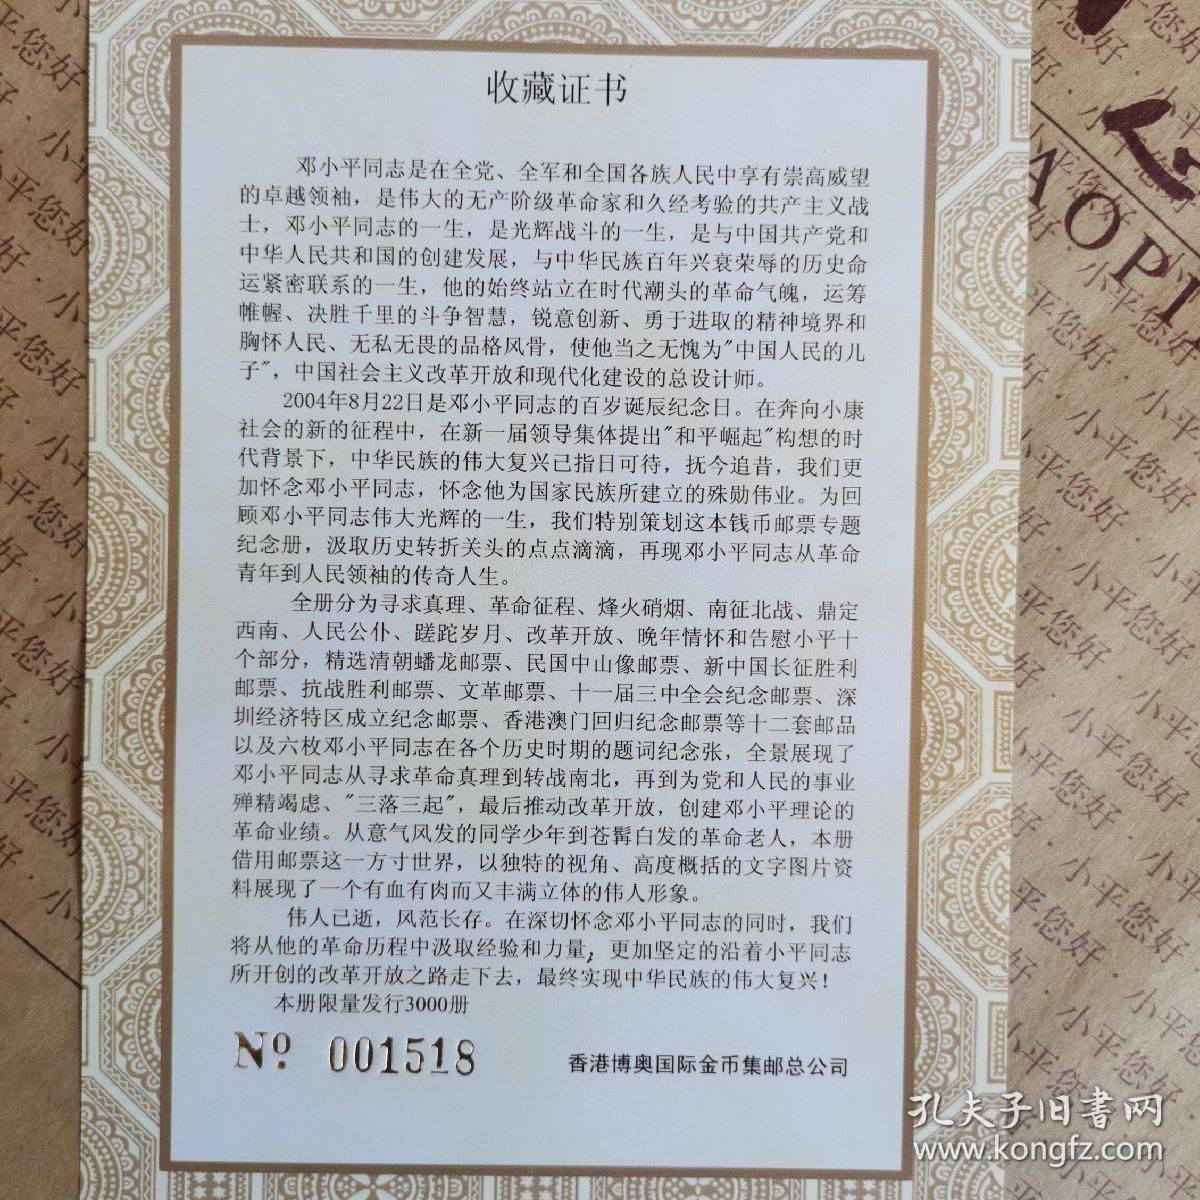 小平您好-百岁诞辰纪念邮票册
详见收藏证书